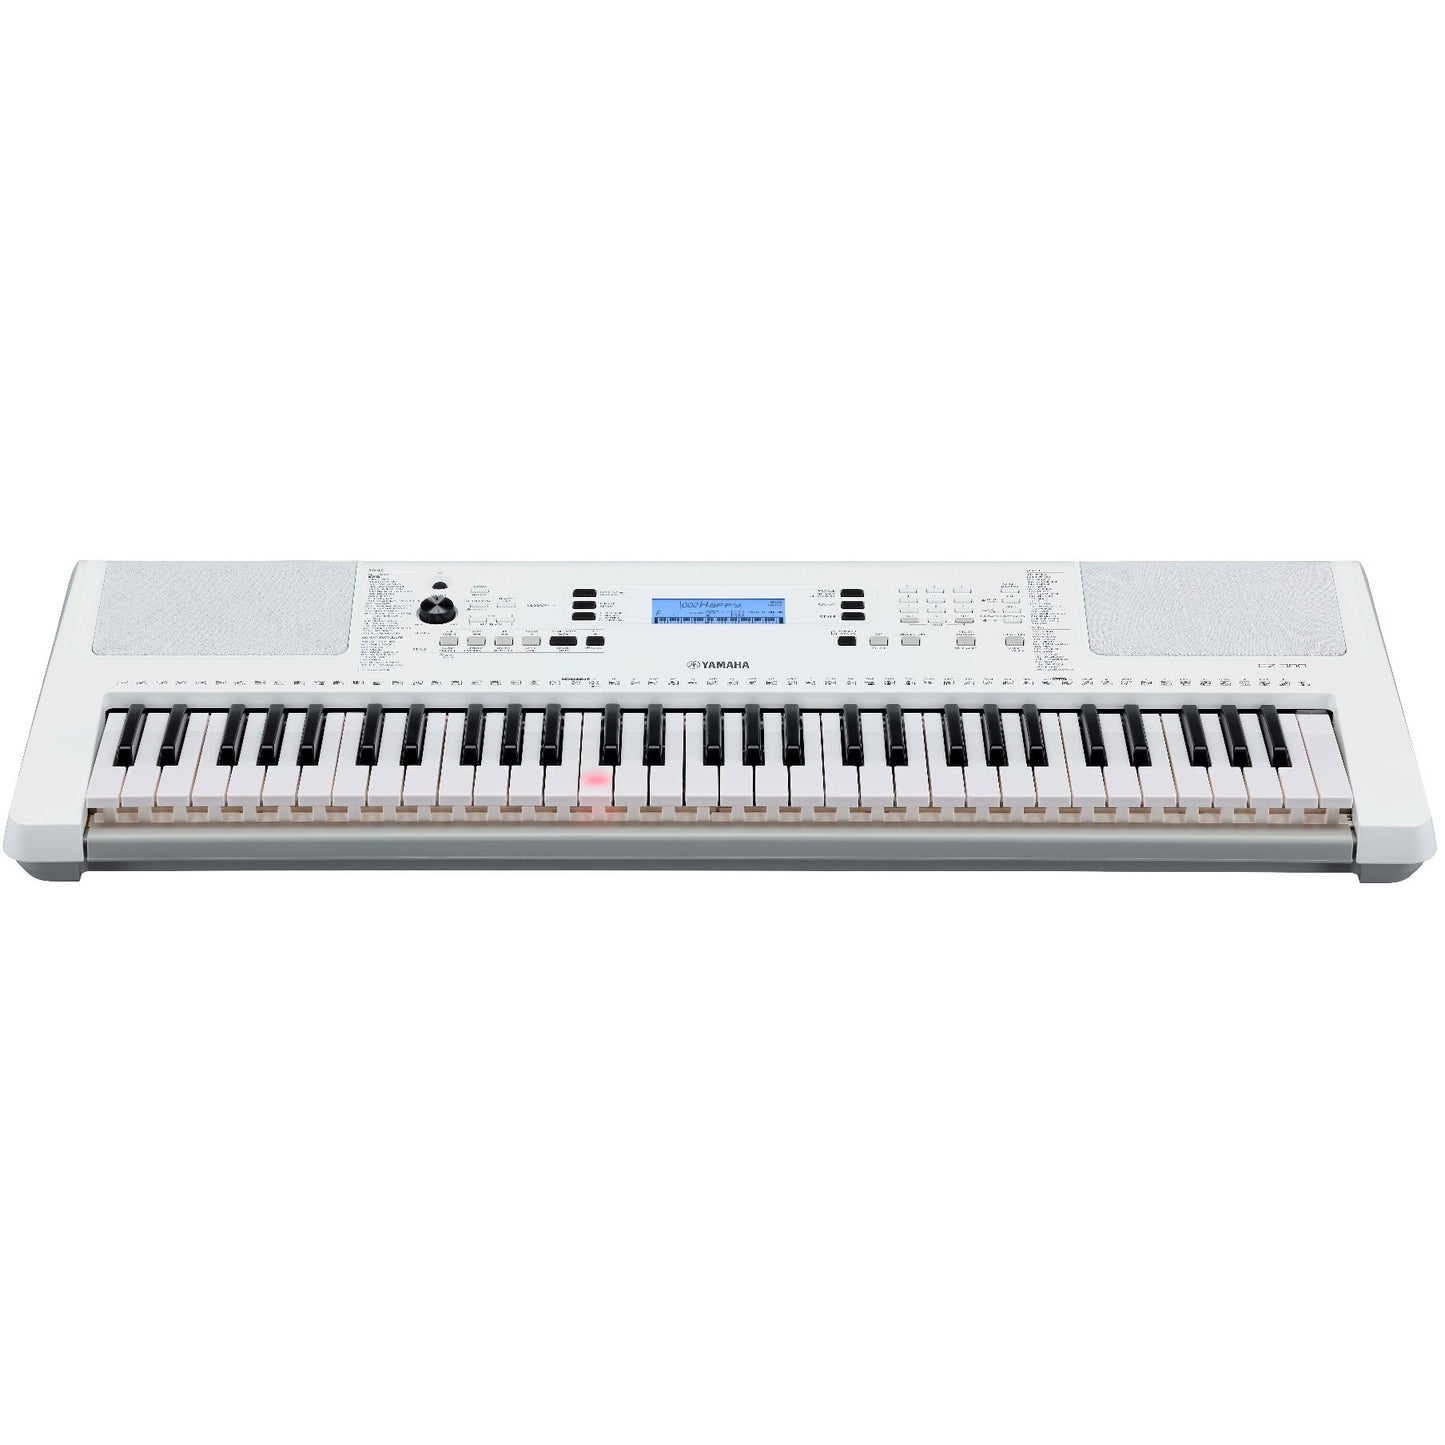 Yamaha EZ300 61-key Lighted Key Portable Keyboard